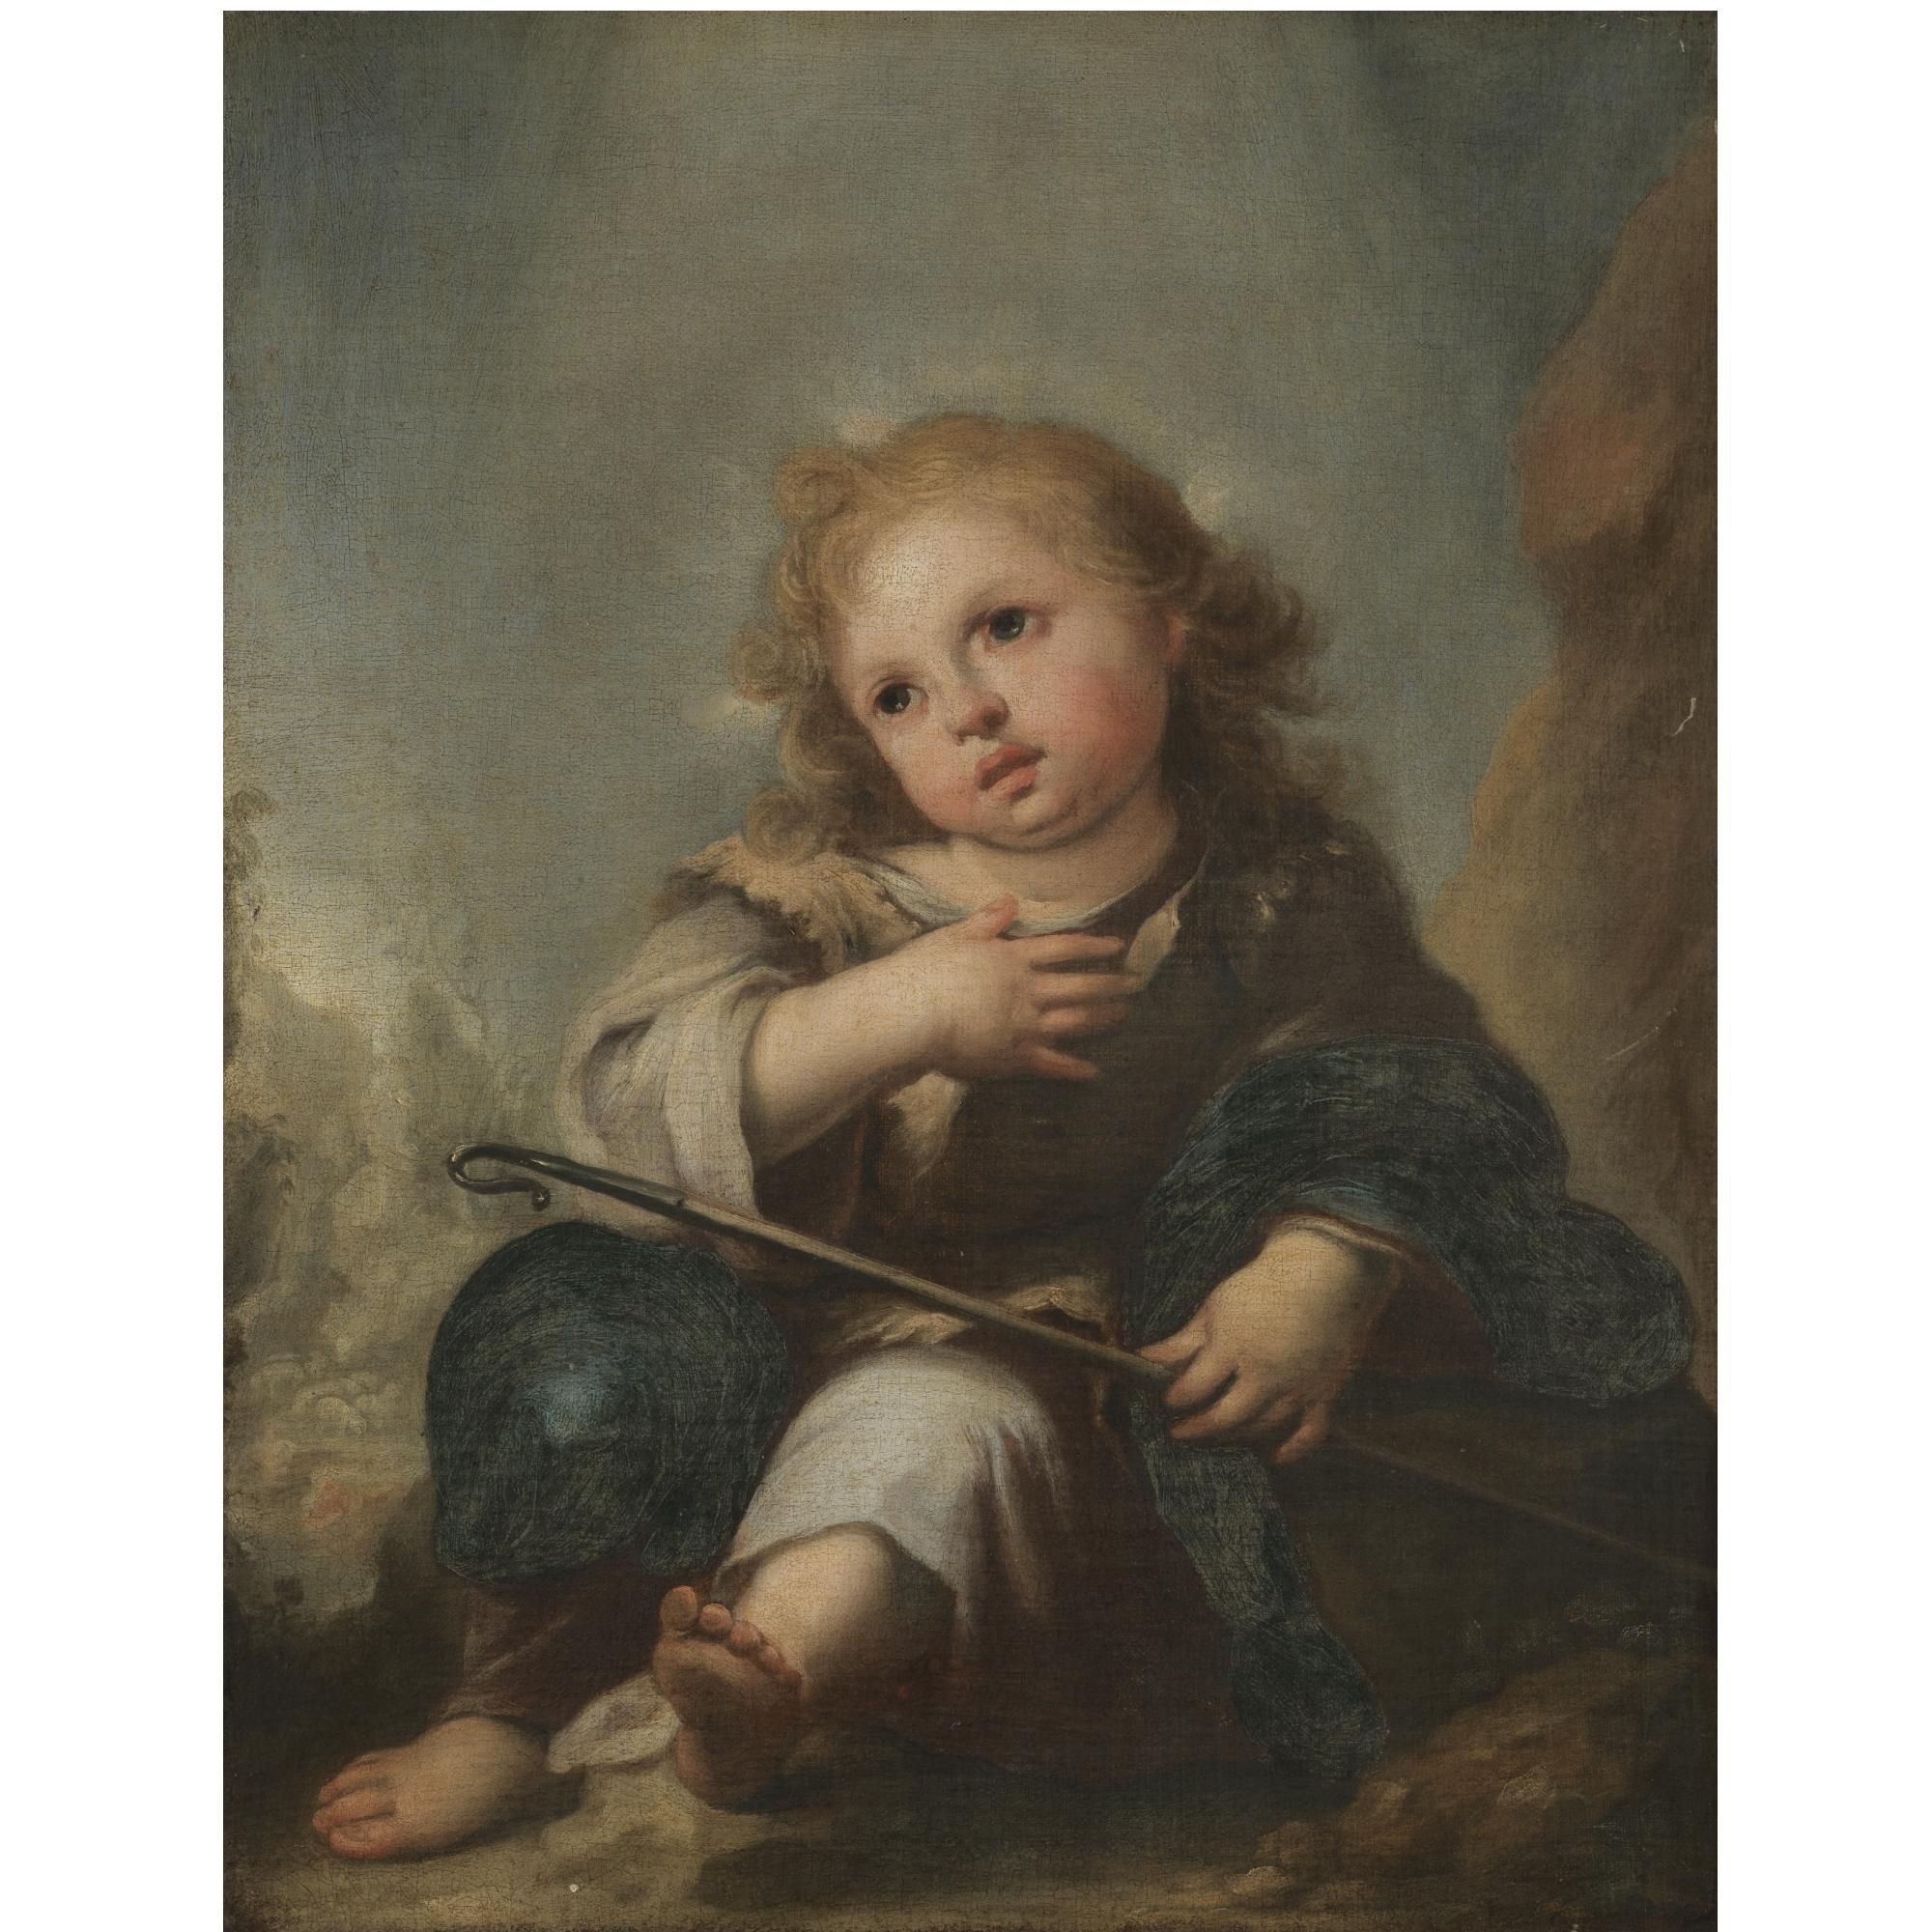 Мальчик с собакой бартоломе. Бартоломе Эстебан Мурильо. Бартоломео Эстебан Мурильо (1618—1682). Бартоломео Эстебан Мурильо художник. Бартоломе Эстебан Мурильо жена.